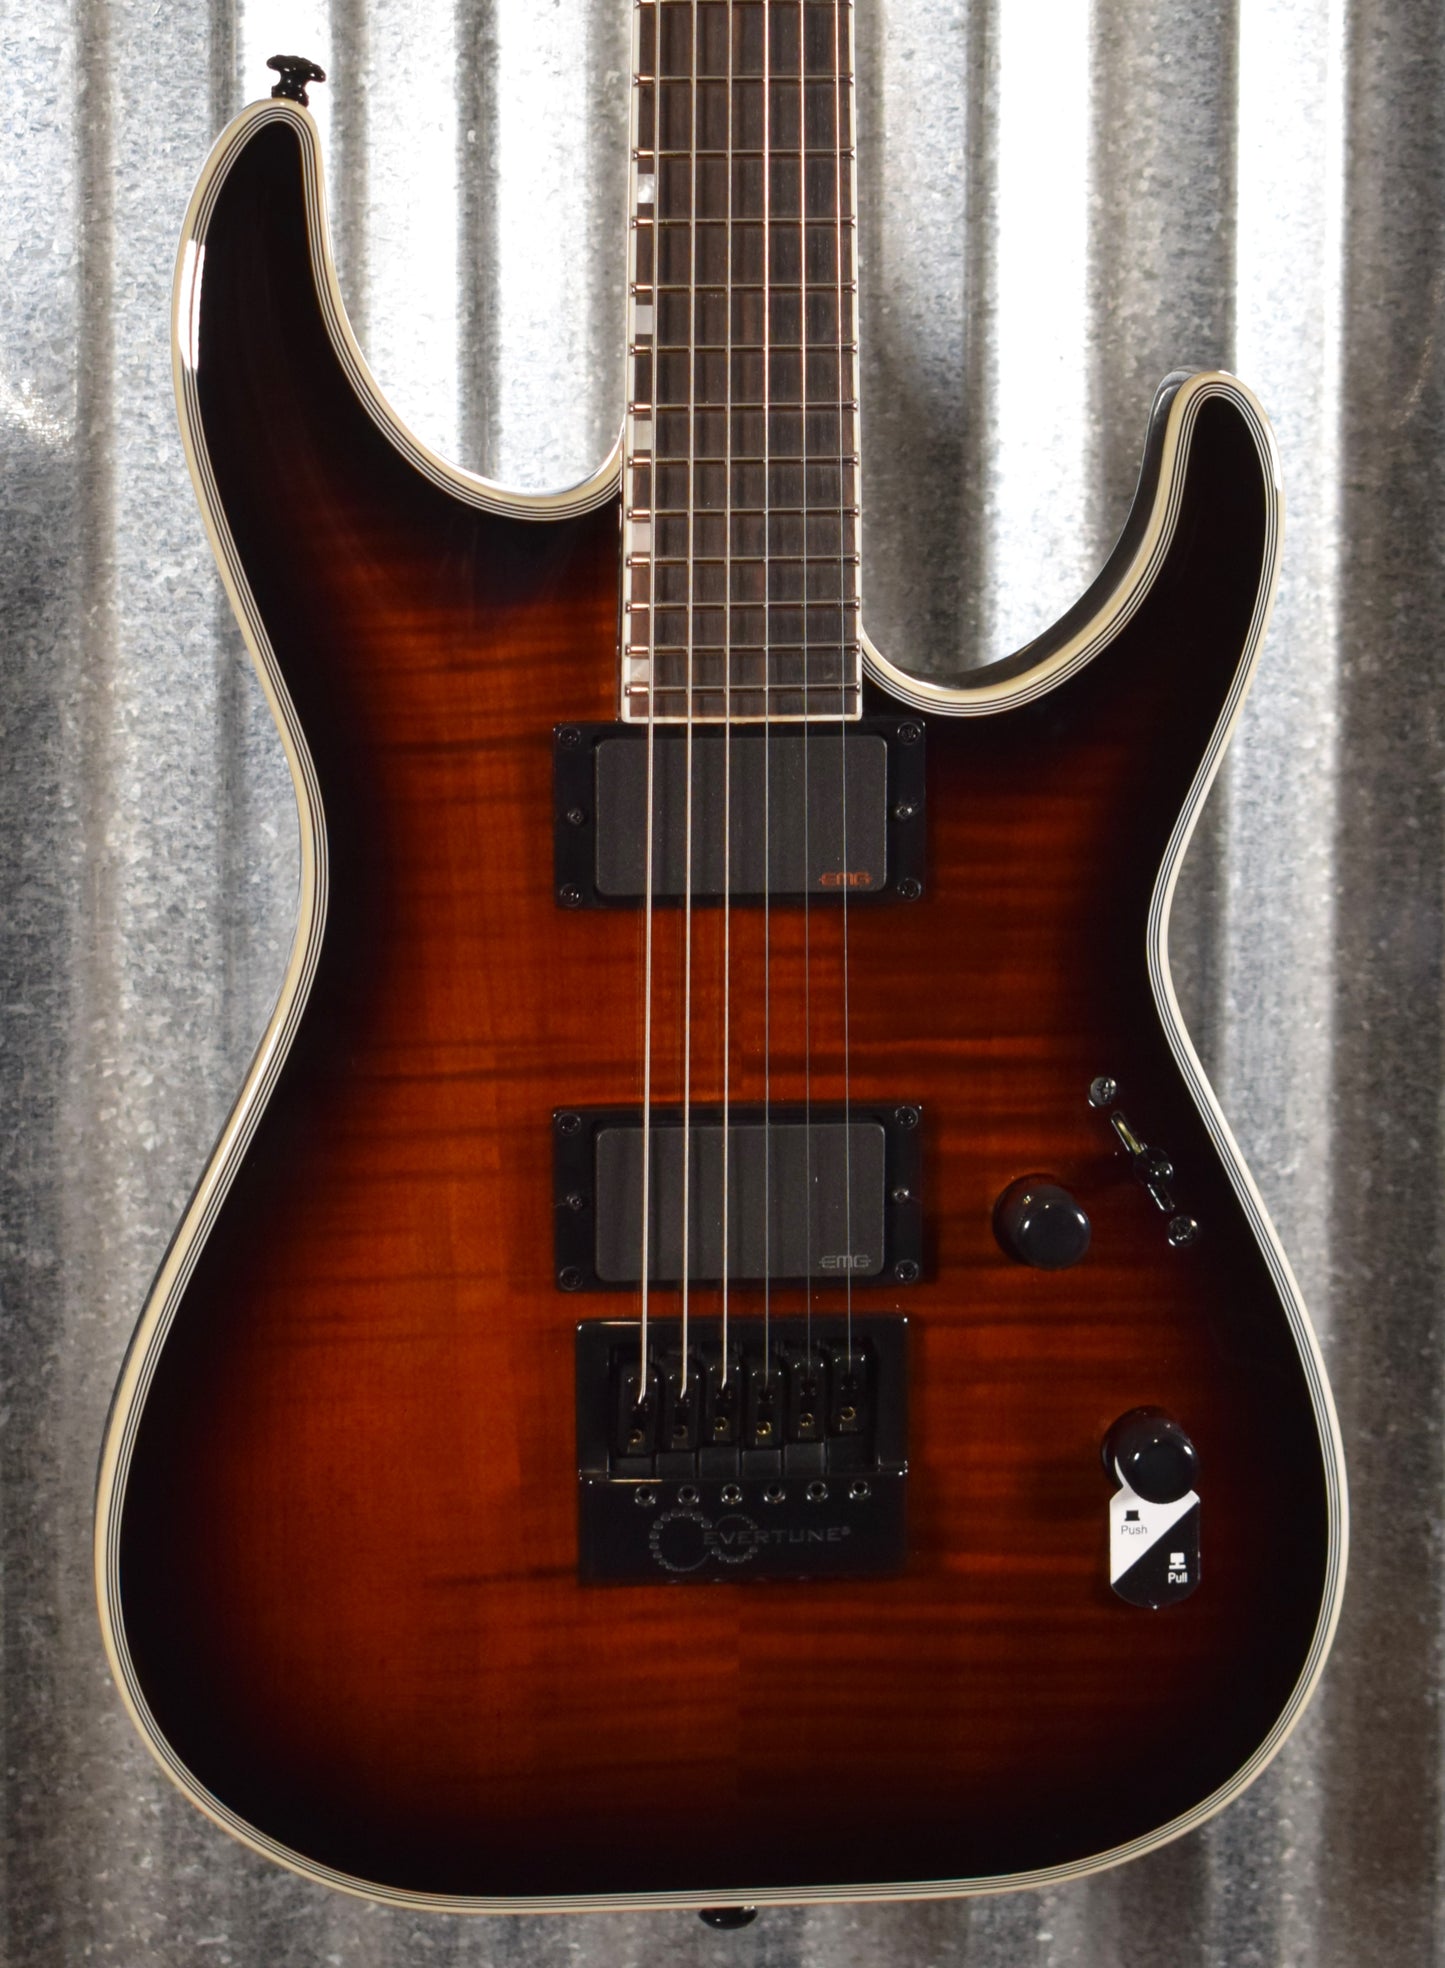 ESP LTD MH-1000 Evertune Dark Brown Sunburst Guitar LMH1000ETFMDBSB #1597